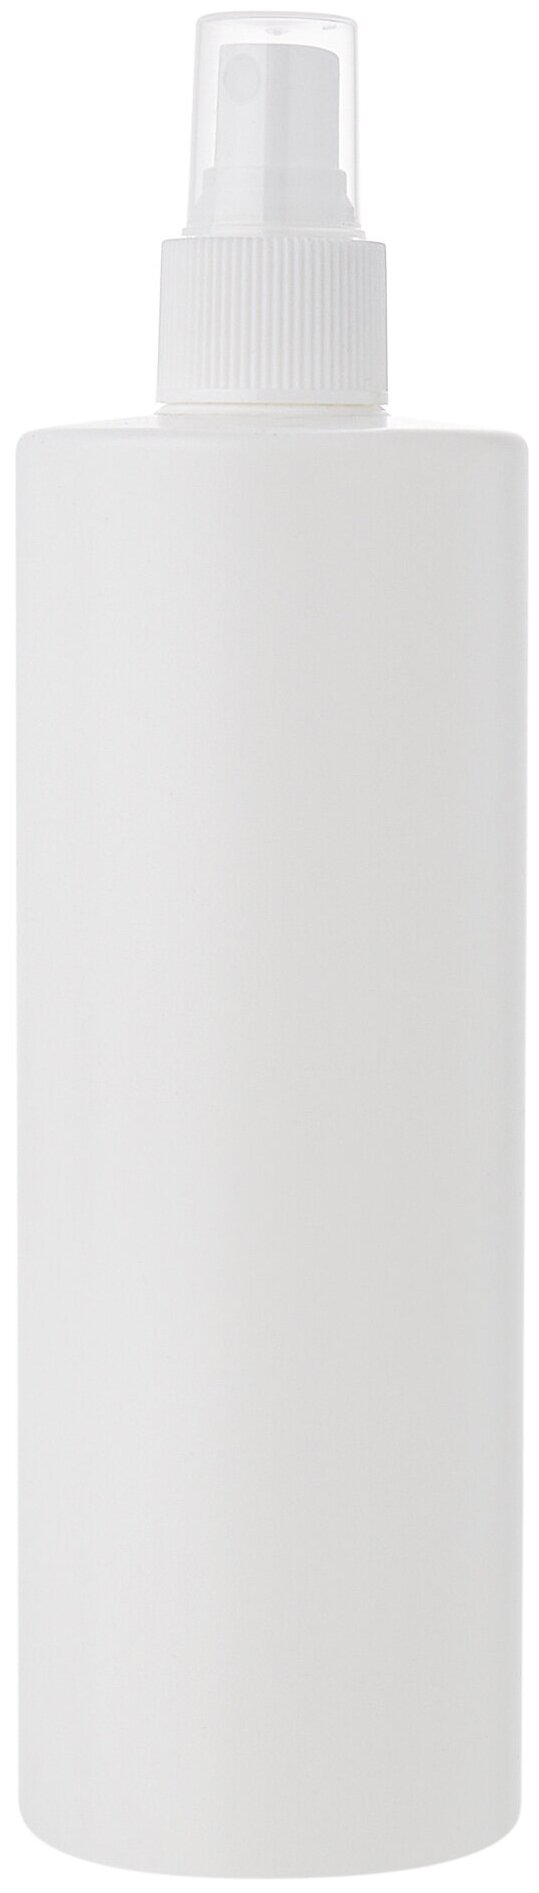 Флакон 250 мл прямоугольный белый с кнопочным распылителем для антисептика, духов, лосьона, 2 шт